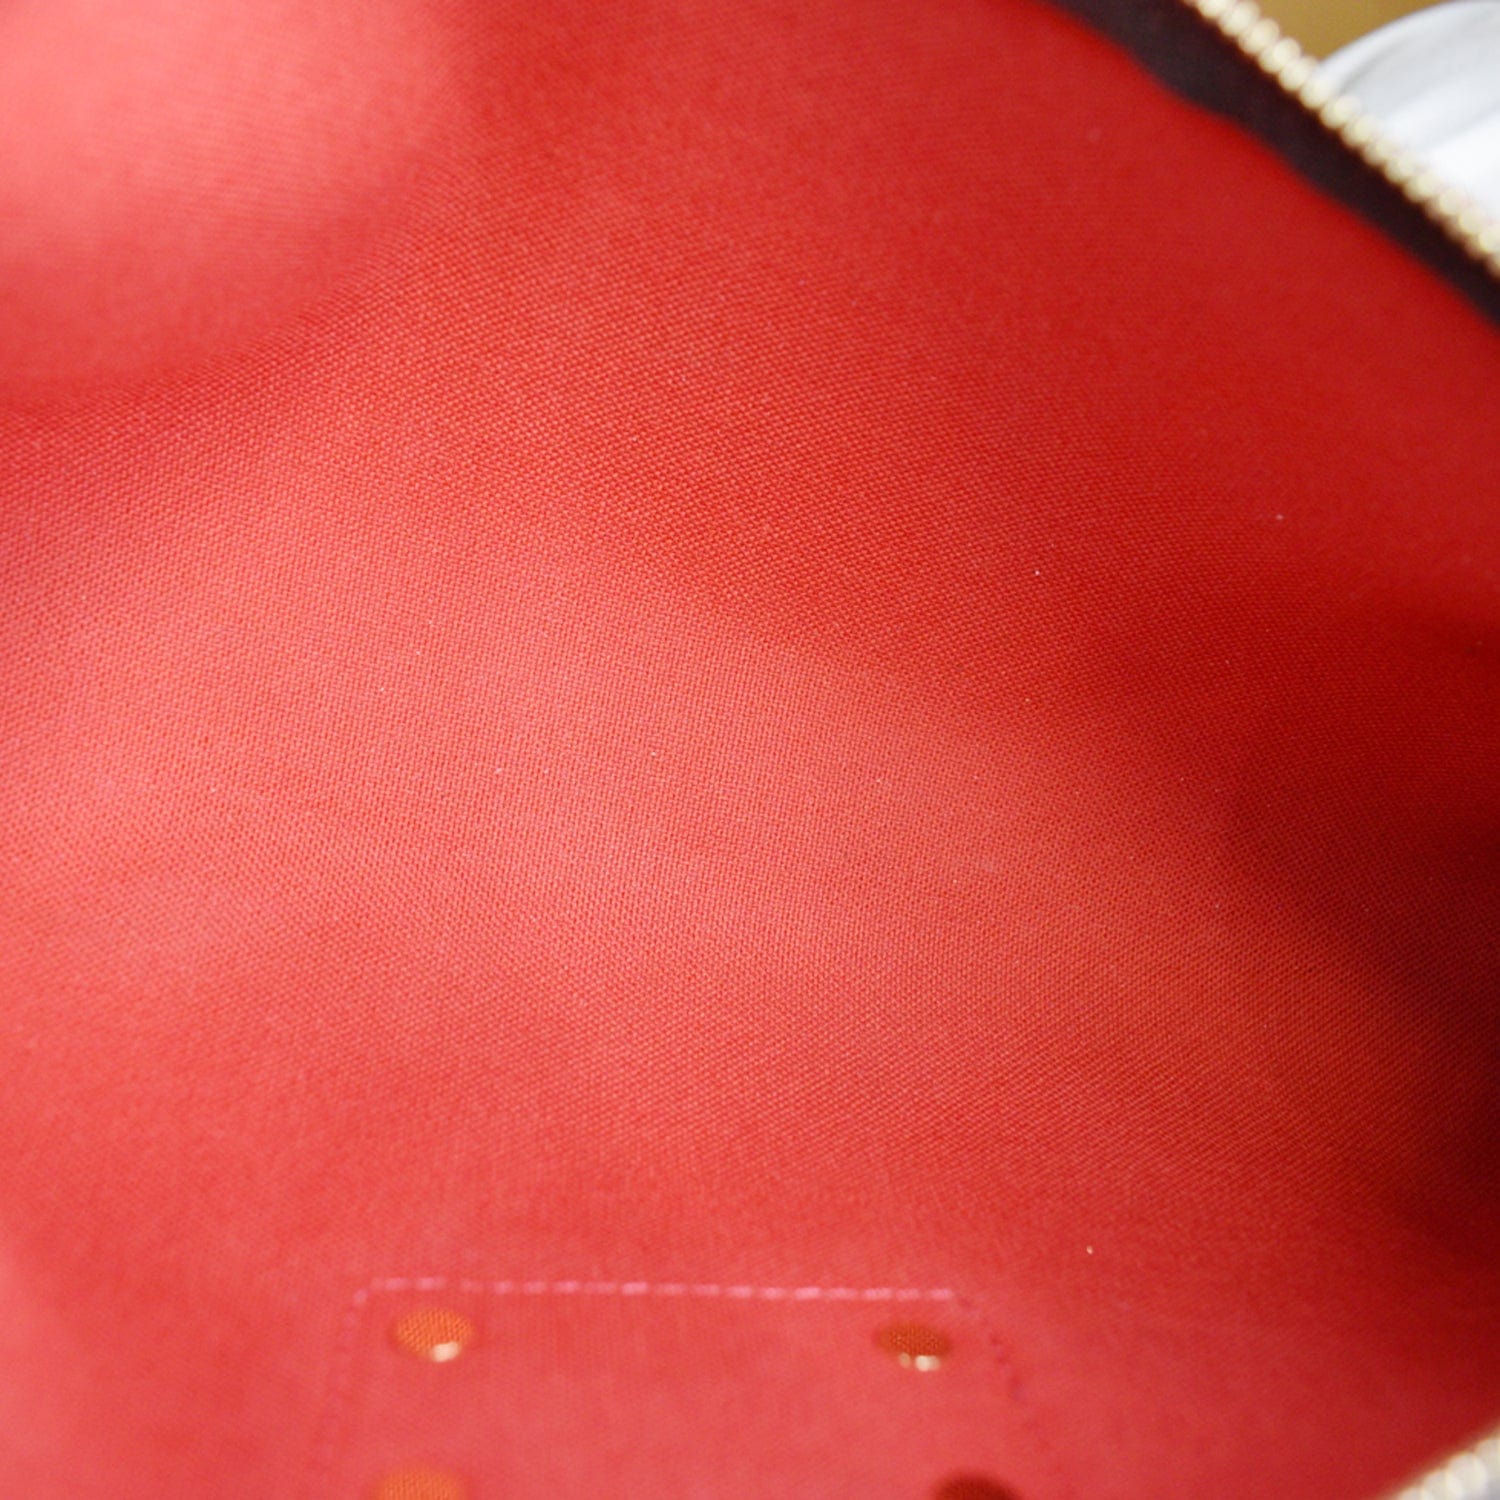 Eva cloth clutch bag Louis Vuitton Brown in Fabric - 9310083